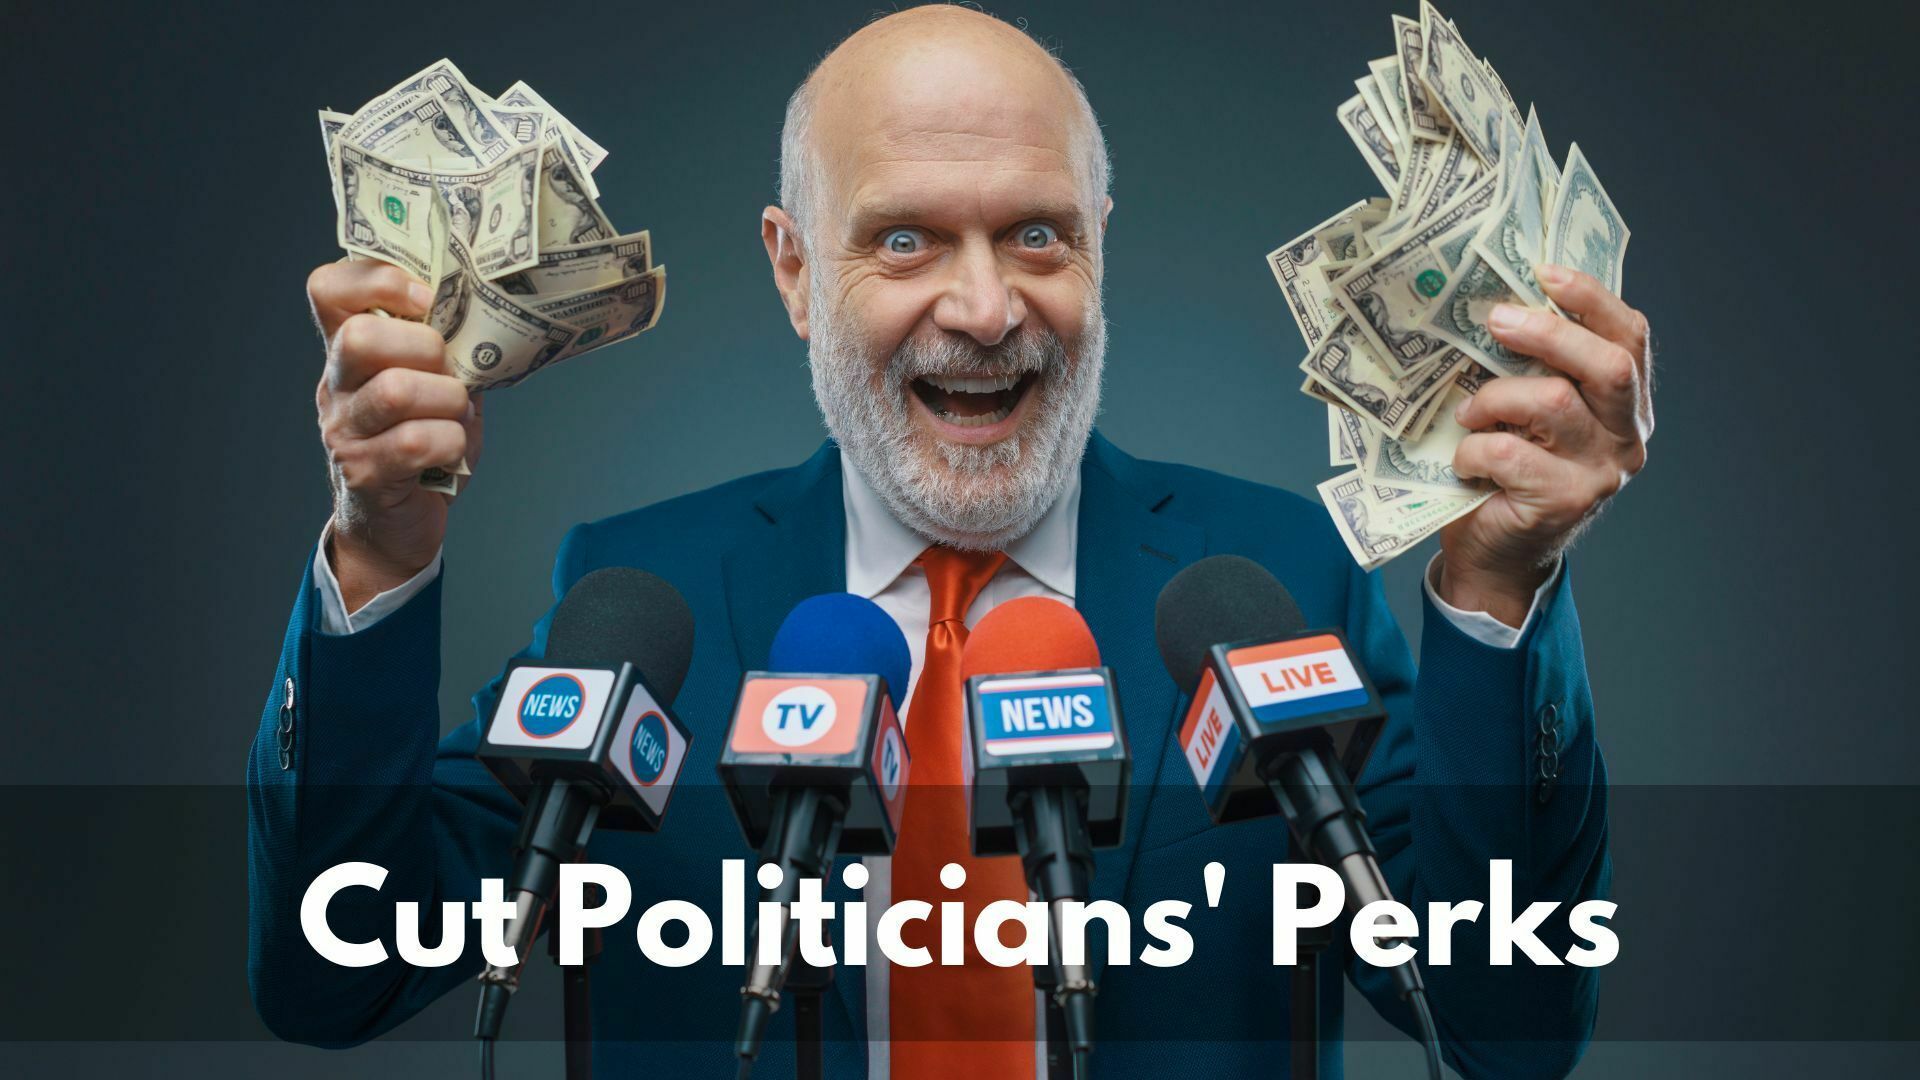 Cut politicians' perks 1920x1080